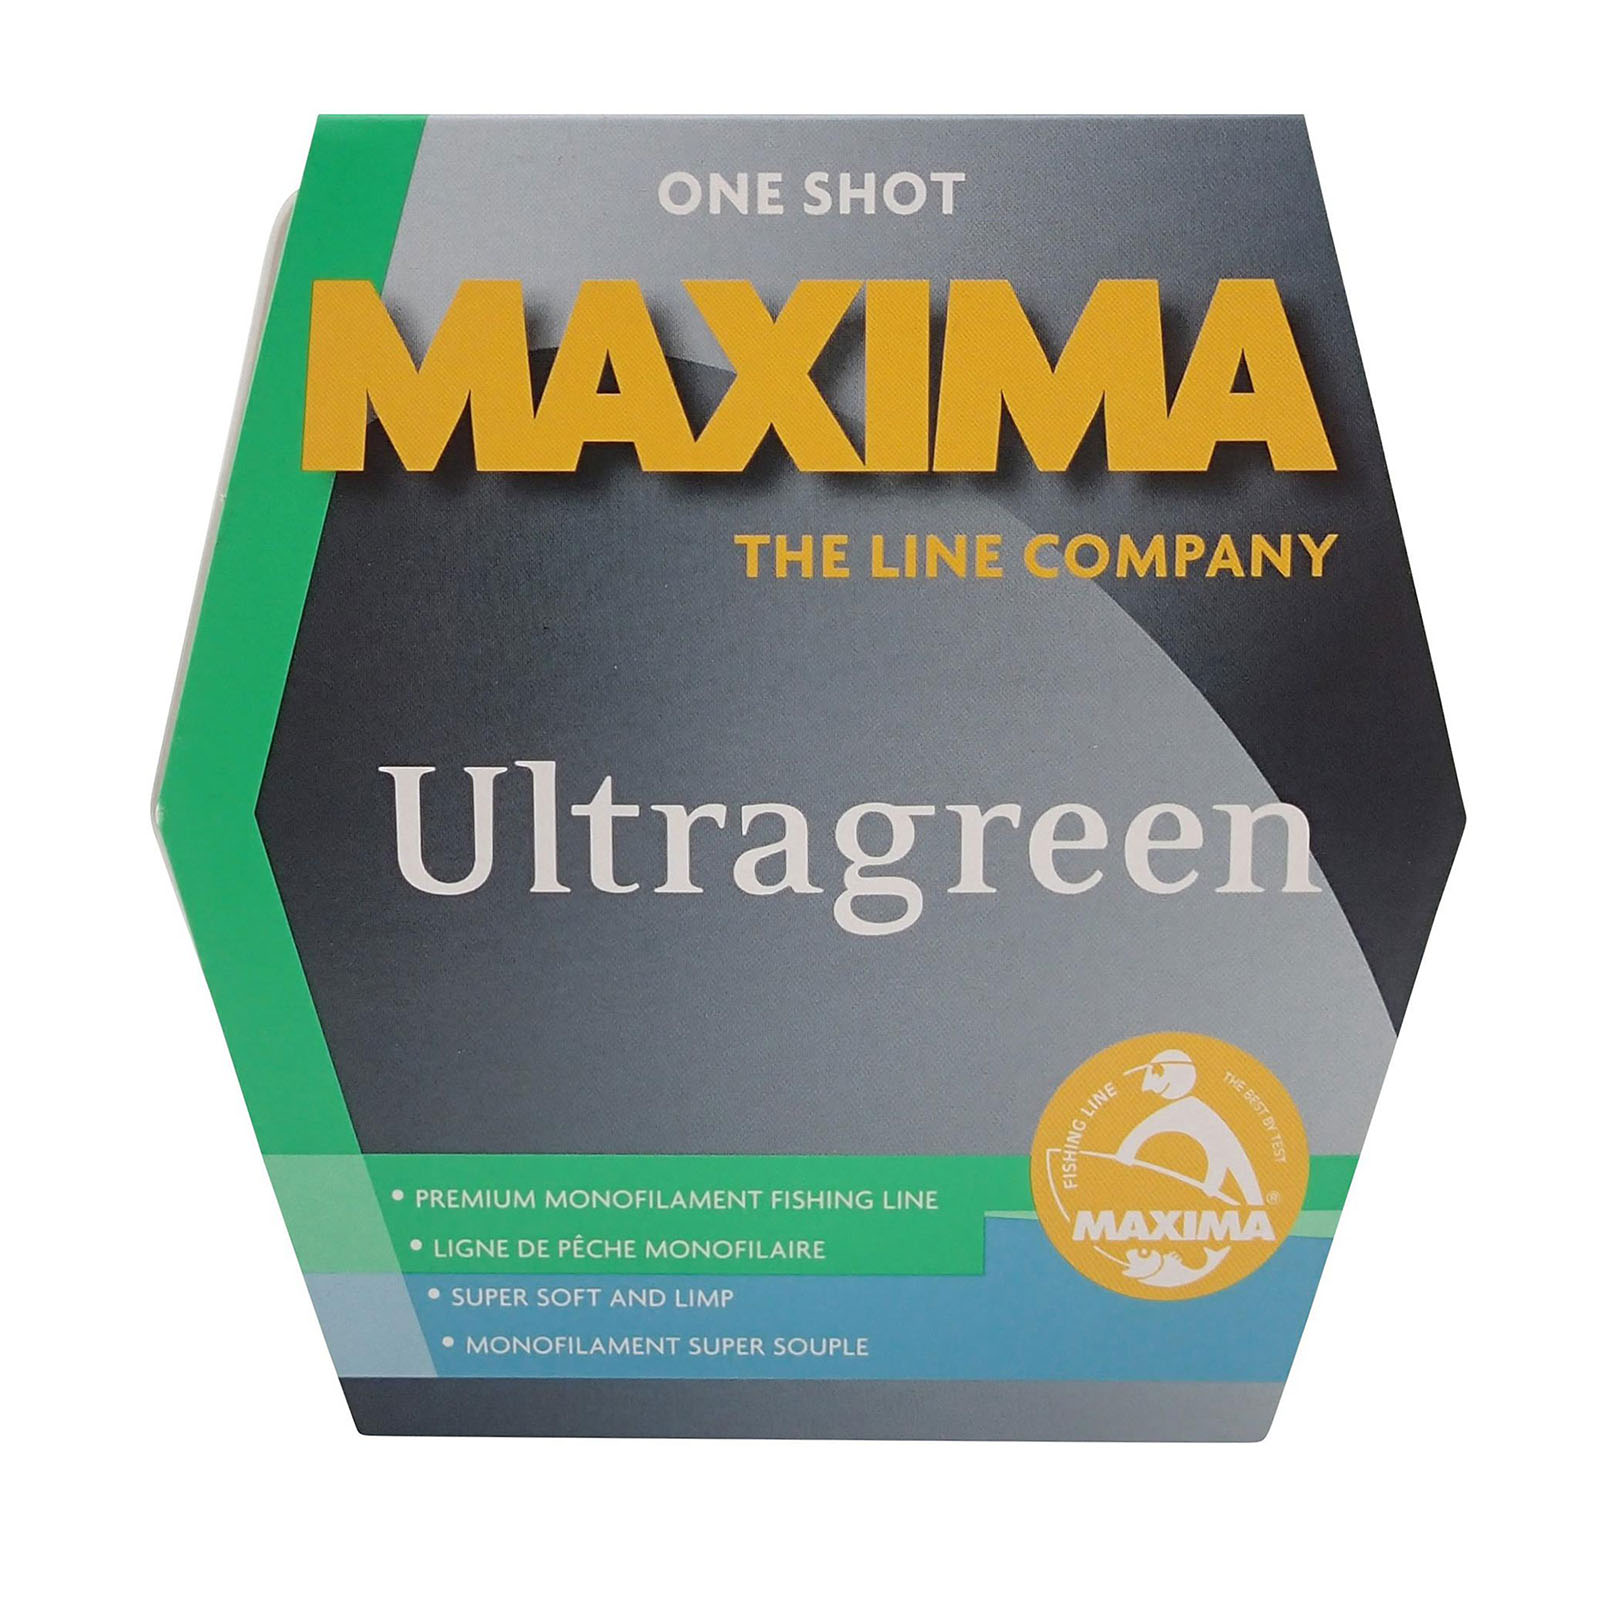 Maxima Ultragreen One-Shot Fishing Spool 220 yd/250 yd